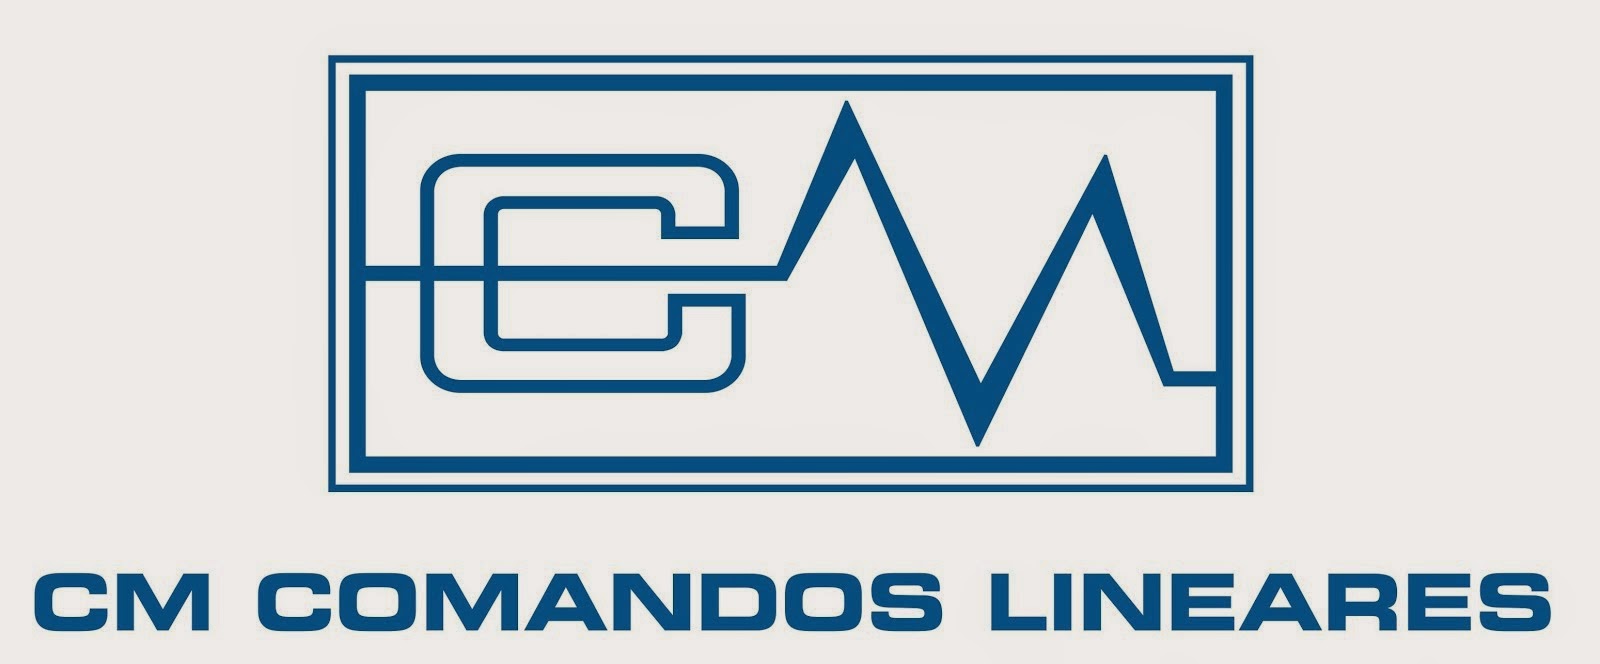 CM_Comandos Lineares